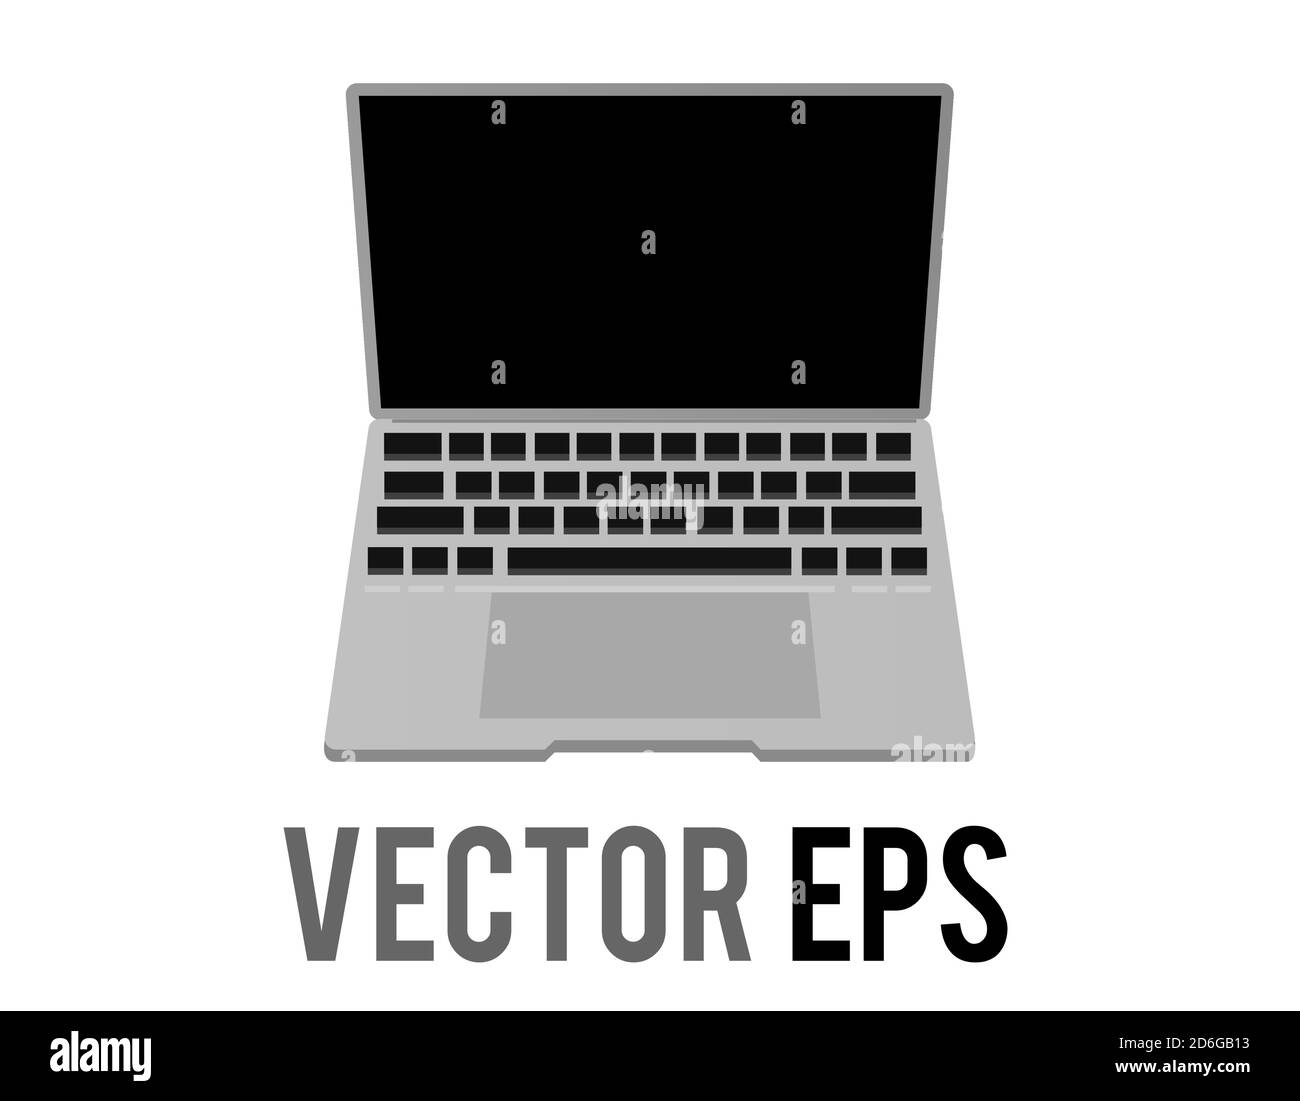 Der isolierte Vektor schwarz und silber Desktop-PC-Symbol in der Vorderansicht, graues Gerät, geöffnet, um einen dunklen Bildschirm, Tastatur und Touchpad zeigen Stock Vektor